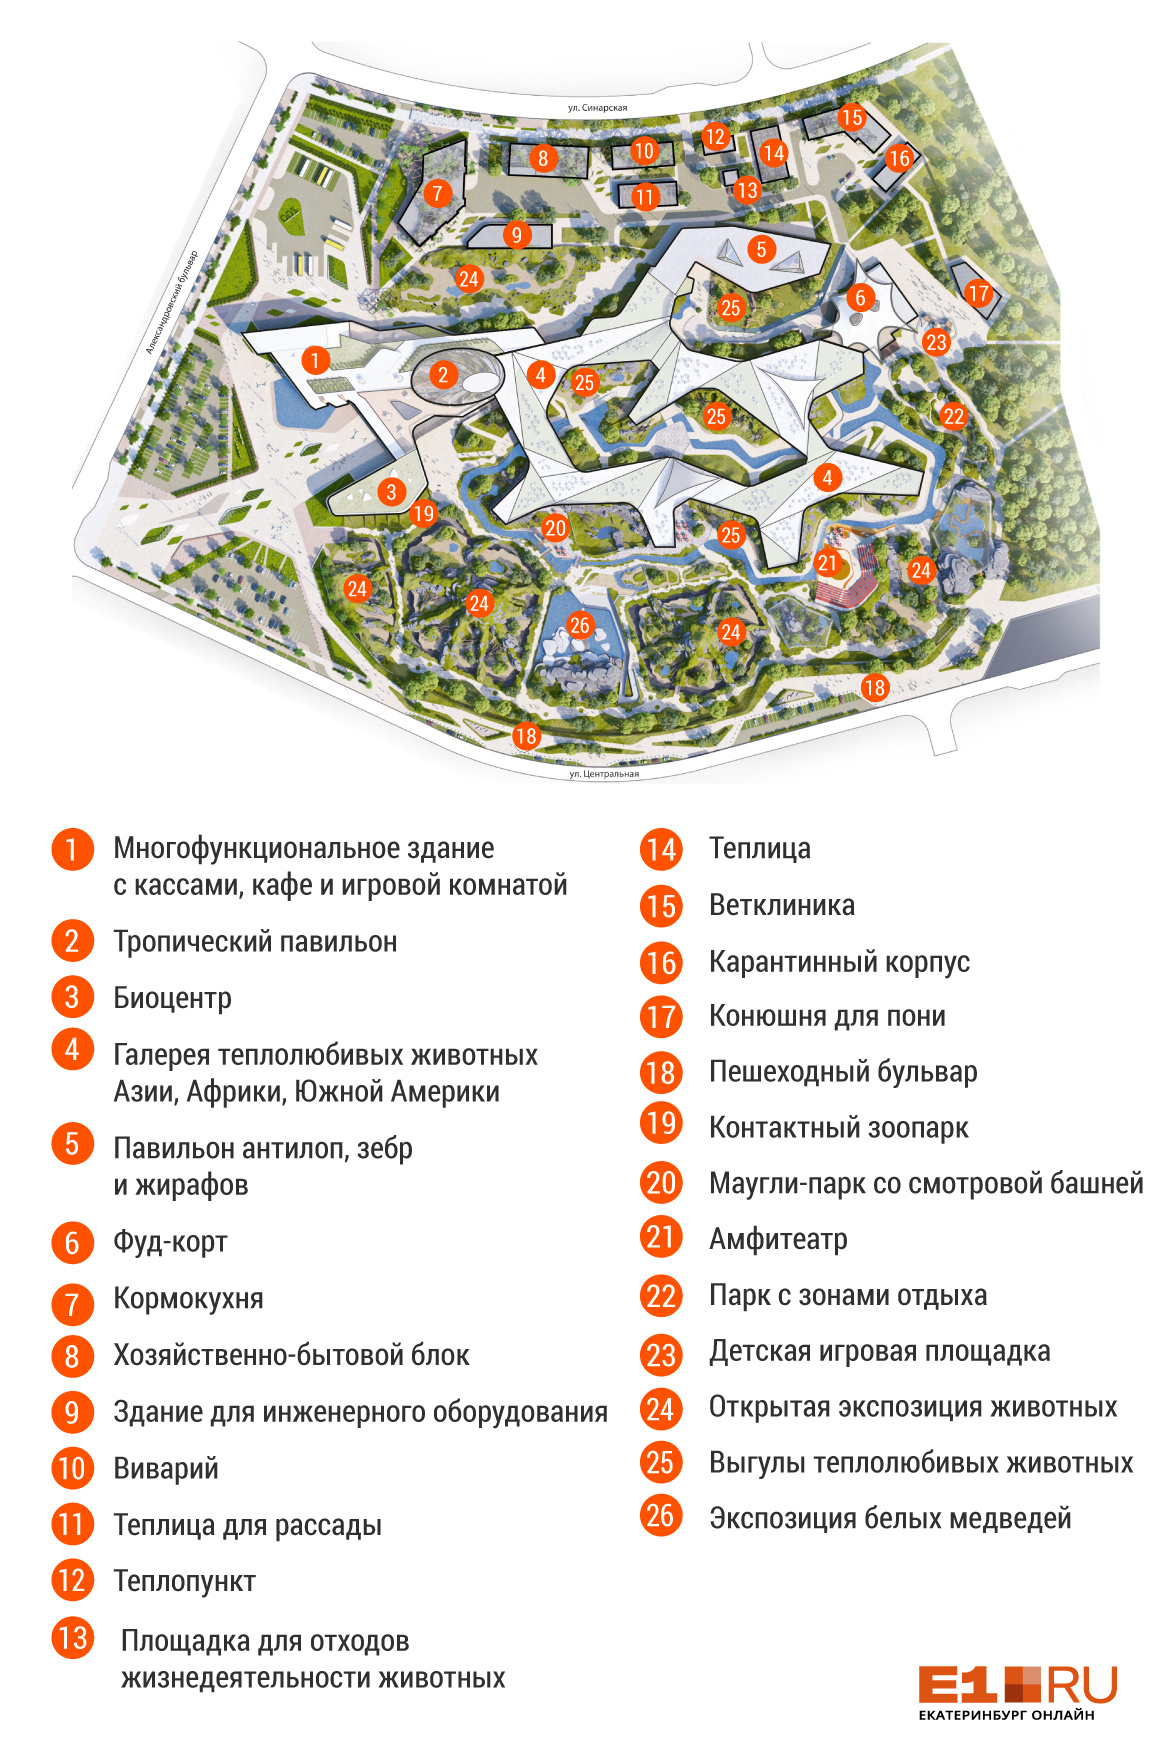 Это карта зданий зоопарка, а также других важных зон<br>